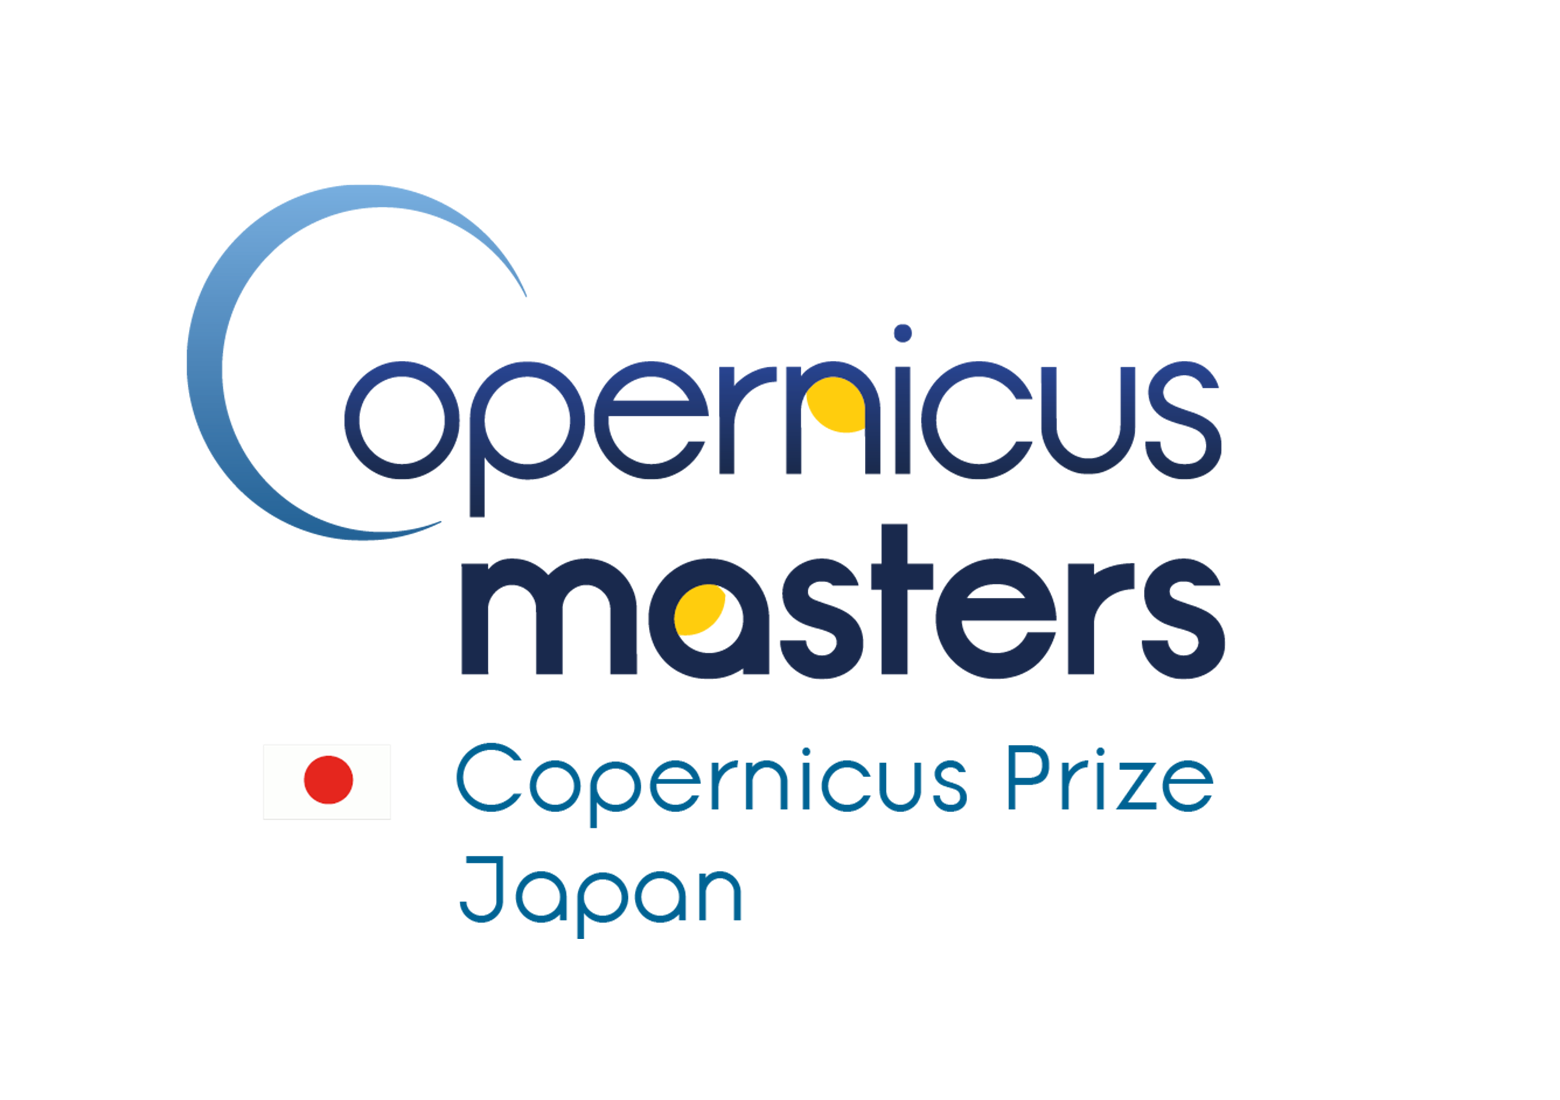 EC(欧州委員会)主催の衛星データを活用したビジネスアイデアコンテスト「Copernicus Masters」の日本大会優勝者が発表されました